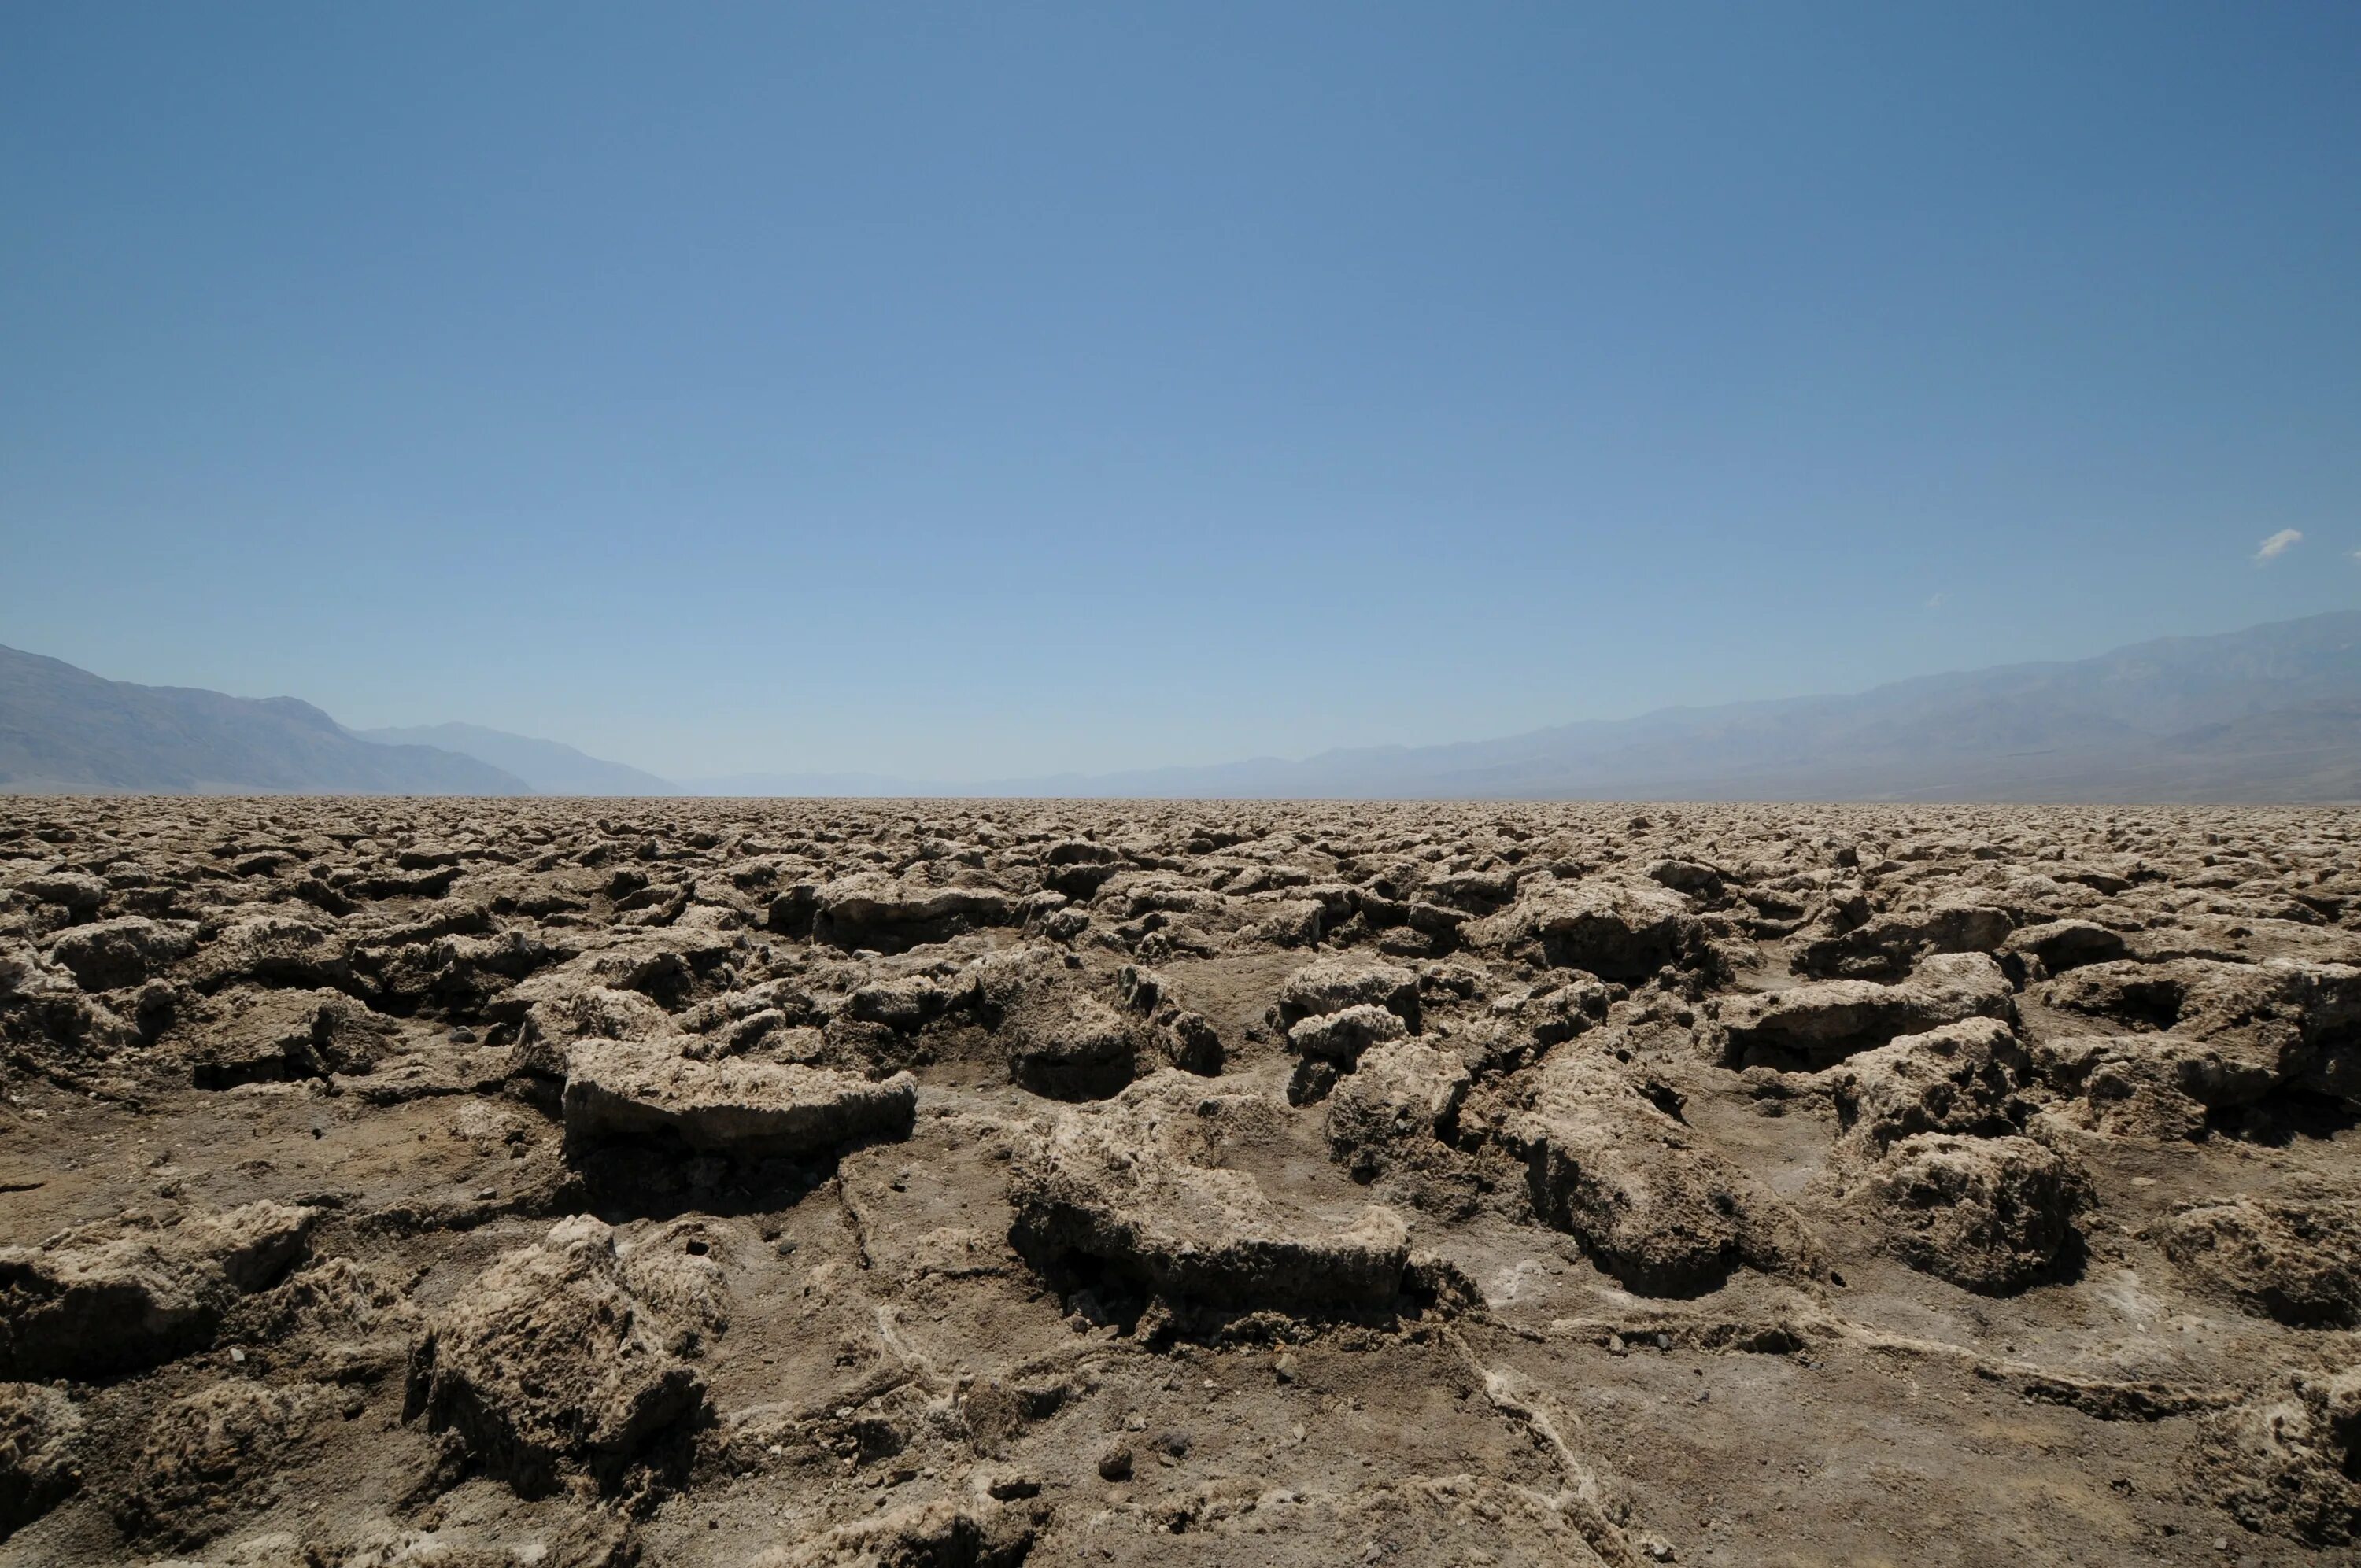 Ground stone. Бедленд пустыня каменистая. Гамады пустыня. Гаммада — каменистая пустыня. Каменистый каменистые пустыни.